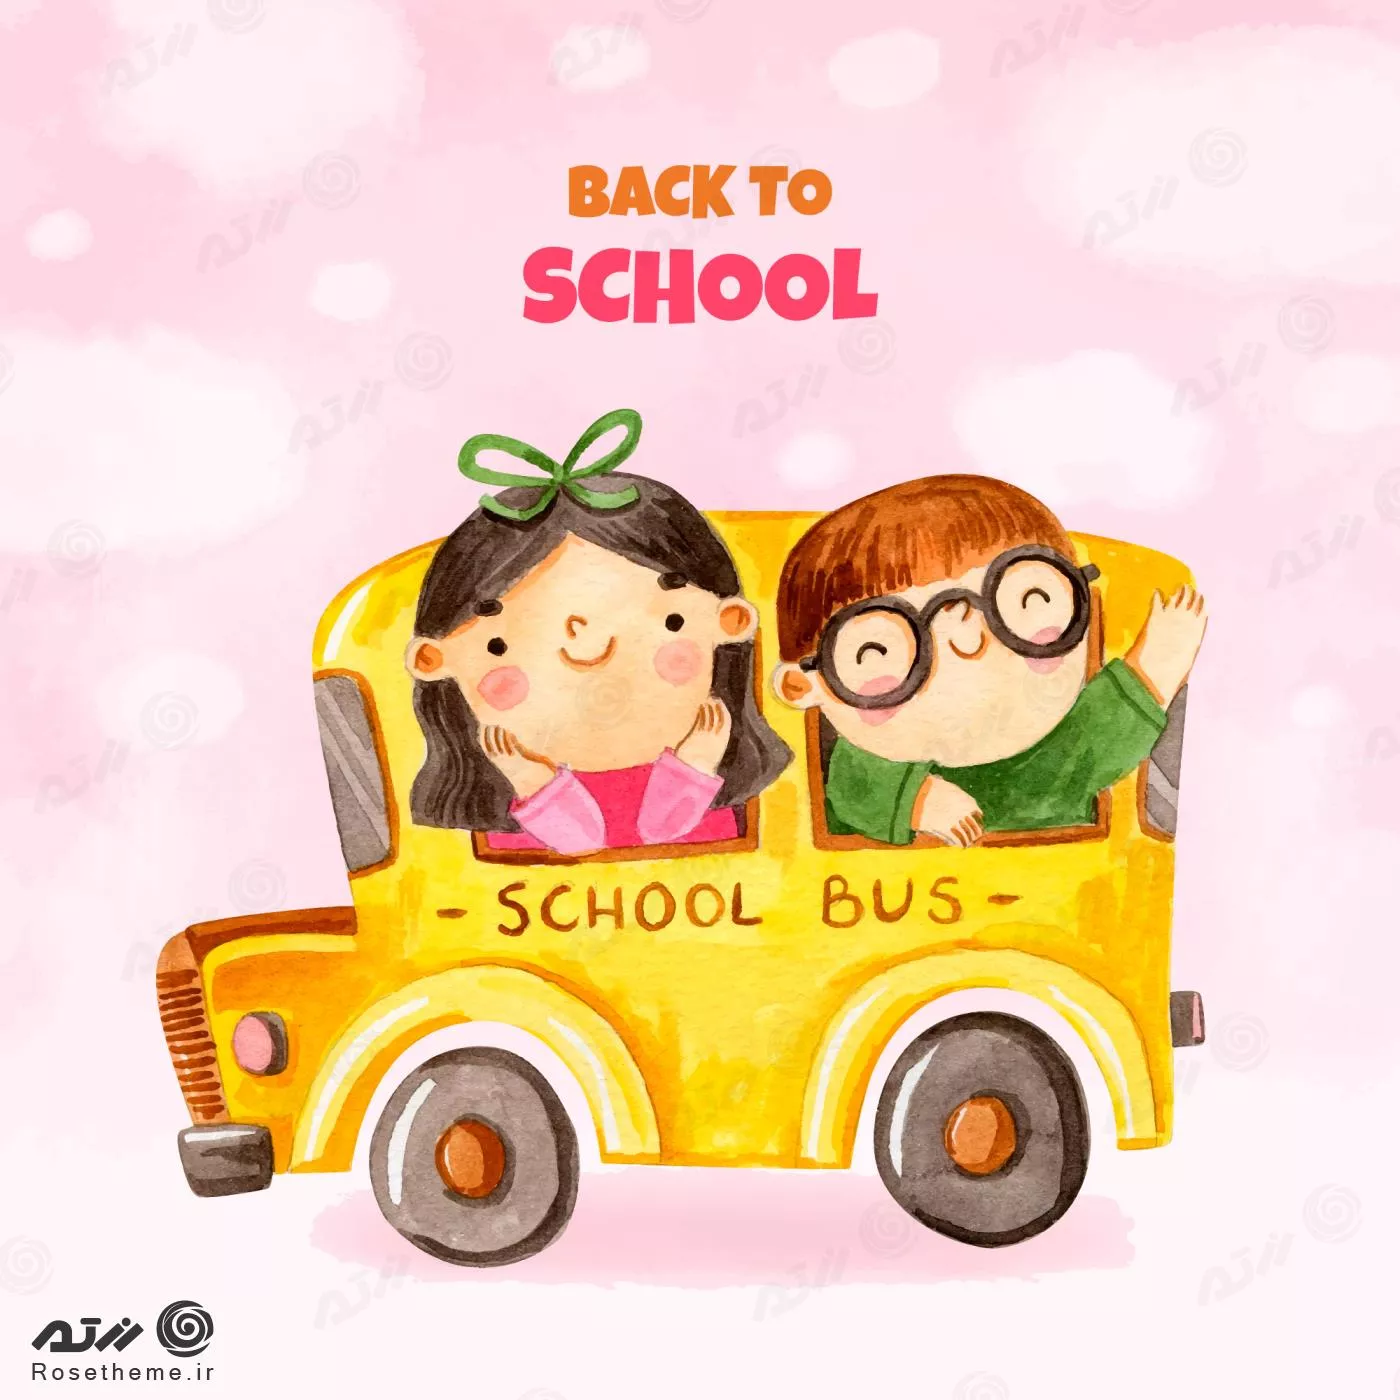 وکتور رایگان EPS و Ai لایه باز آبرنگی بازگشت به مدرسه شامل دختر و پسری در اتوبوس مدرسه 22321